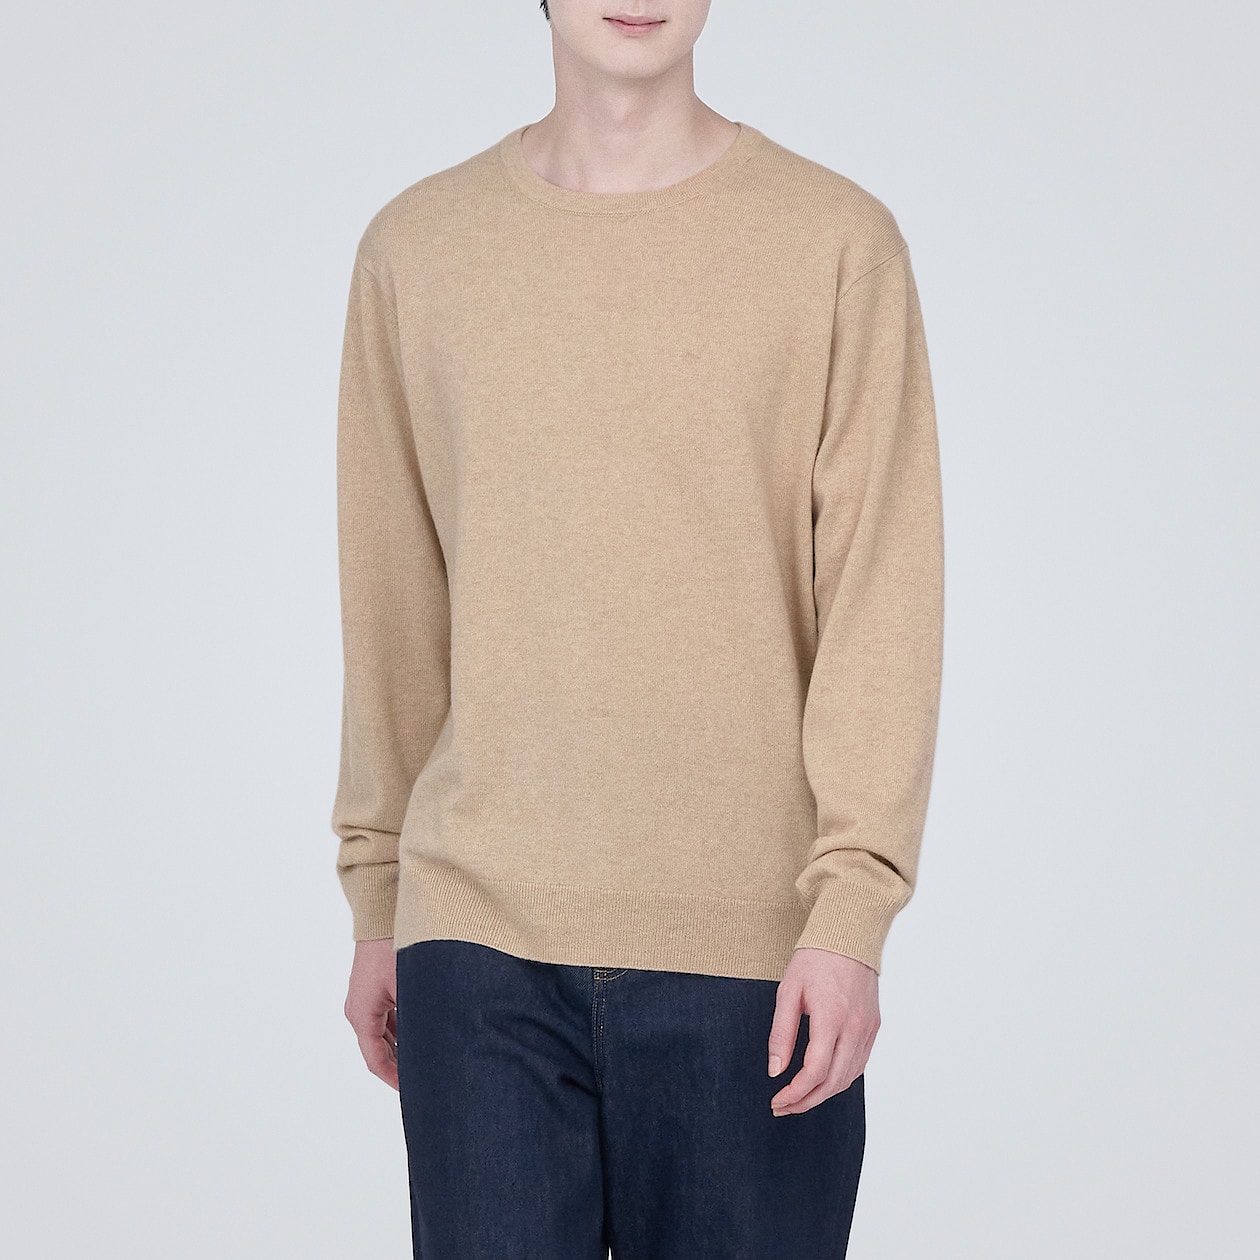 自然のまんまの色カシミヤクルーネックセーター | 無印良品